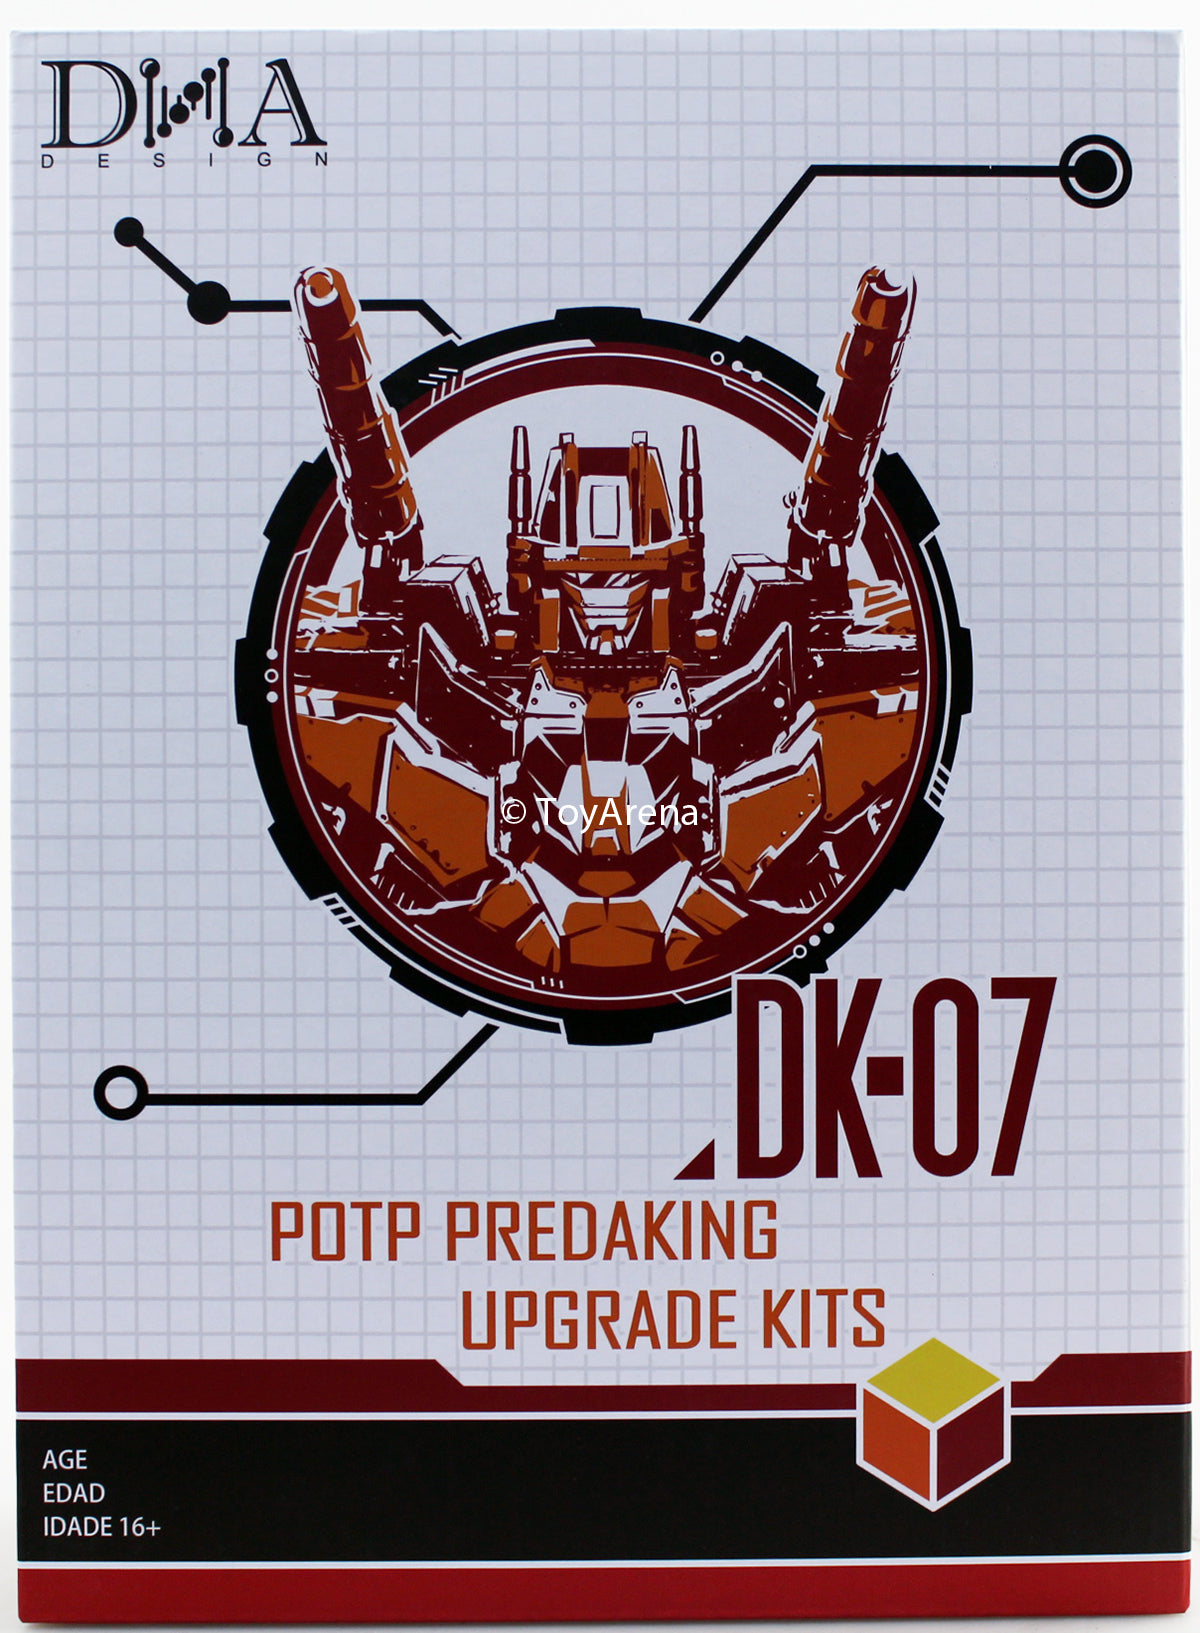 DNA Designs DK-07 Upgrade Kit for POTP Predaking